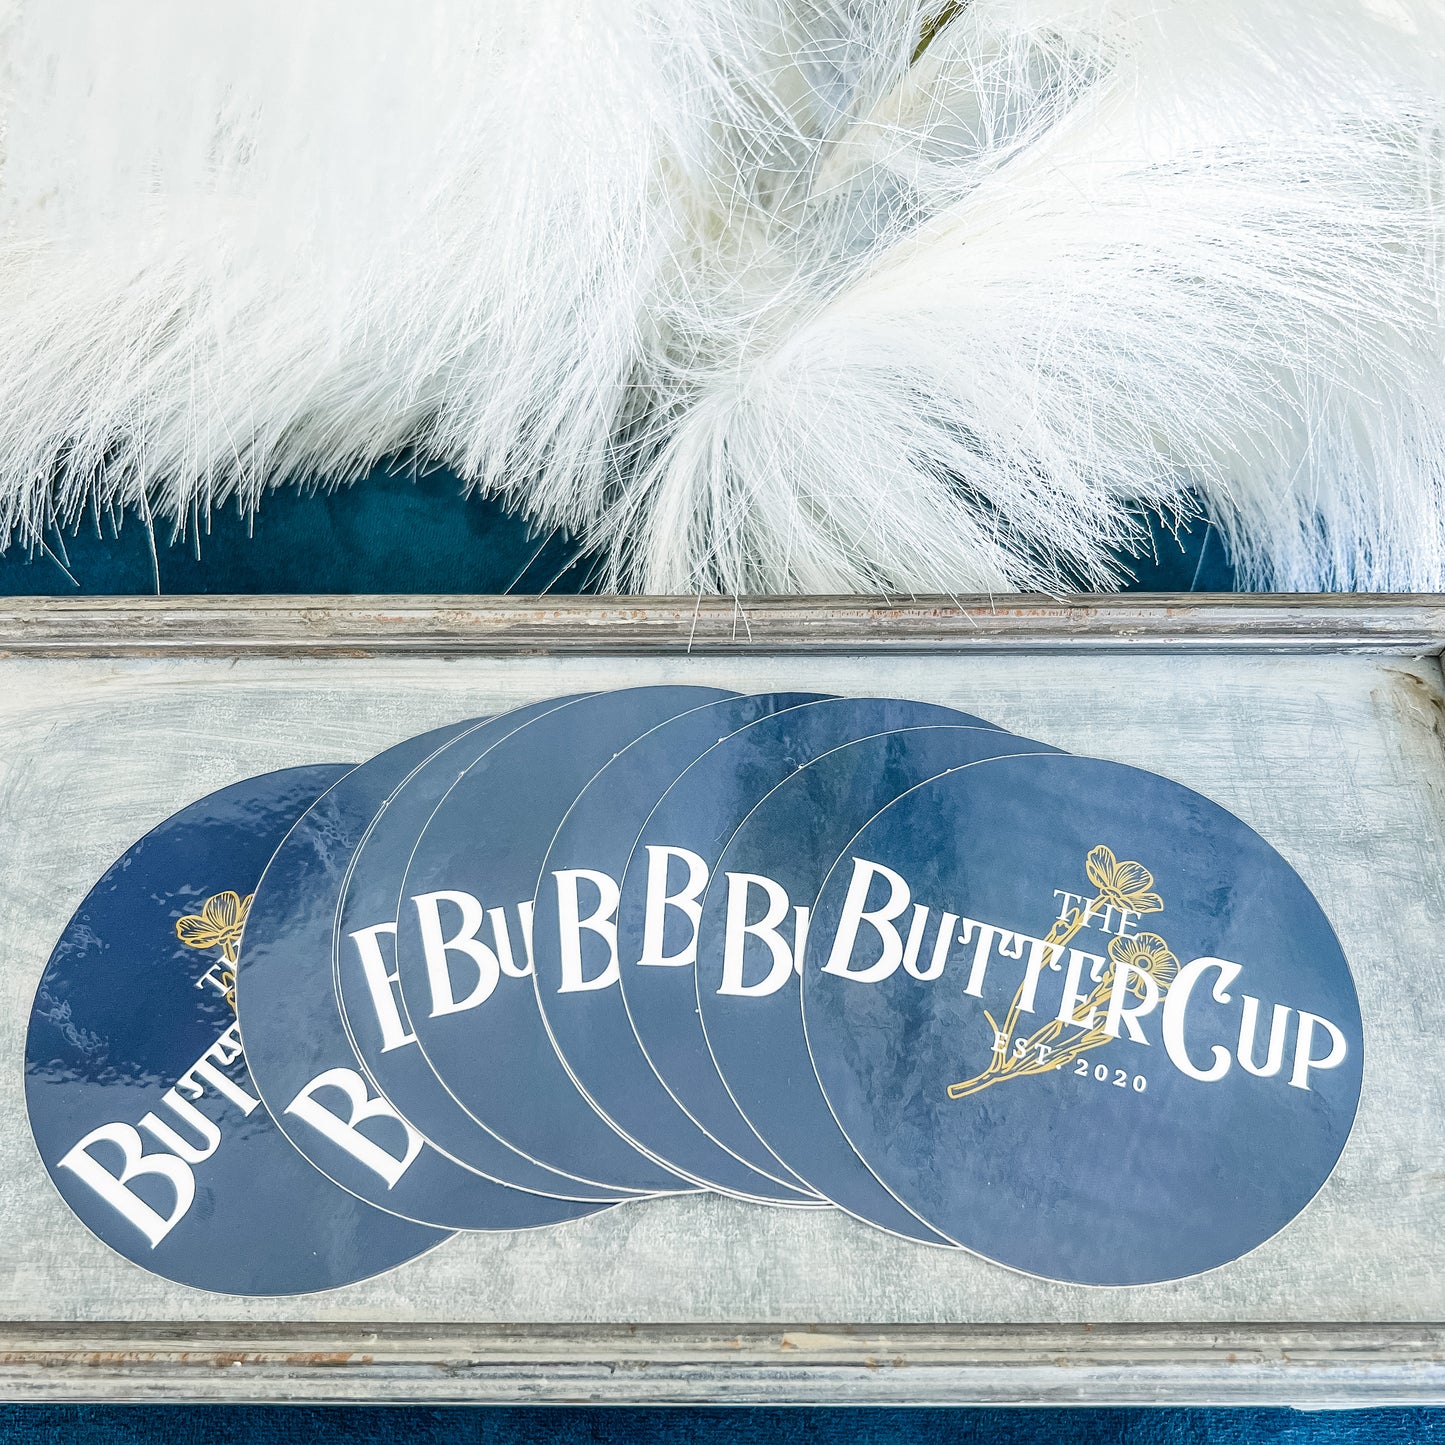 ButterCup Sticker Pack